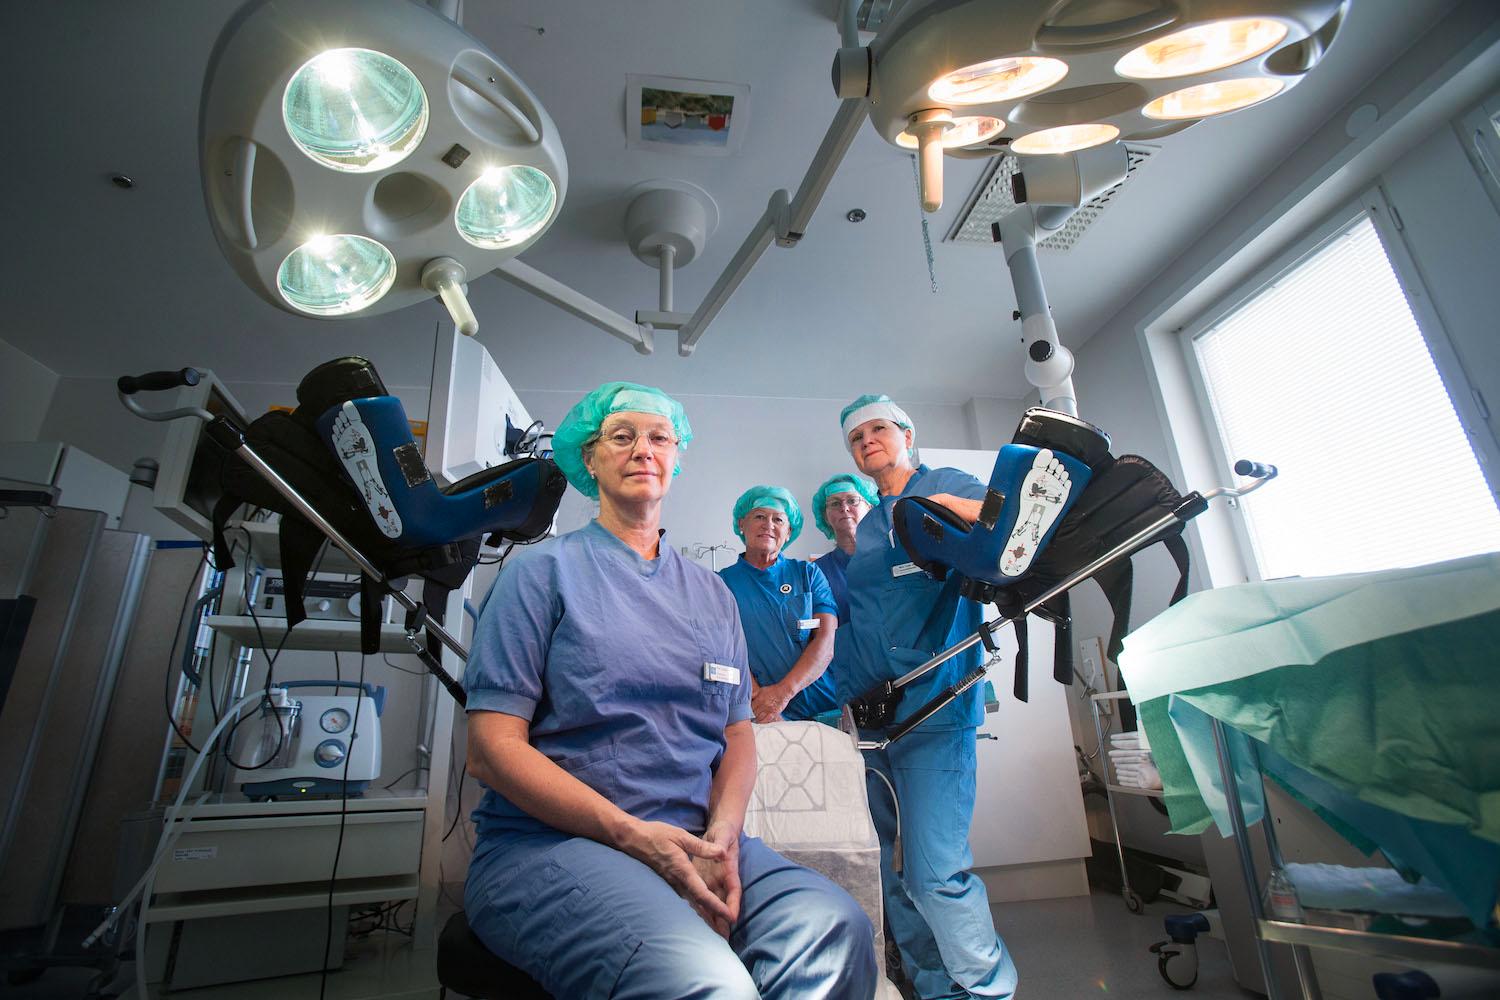 Gynekologikirurgen Eva Uustal och hennes operationsteam på kvinnokliniken vid Linköpings universitetssjukhus opererar dagligen förlossningsskador hos kvinnor.